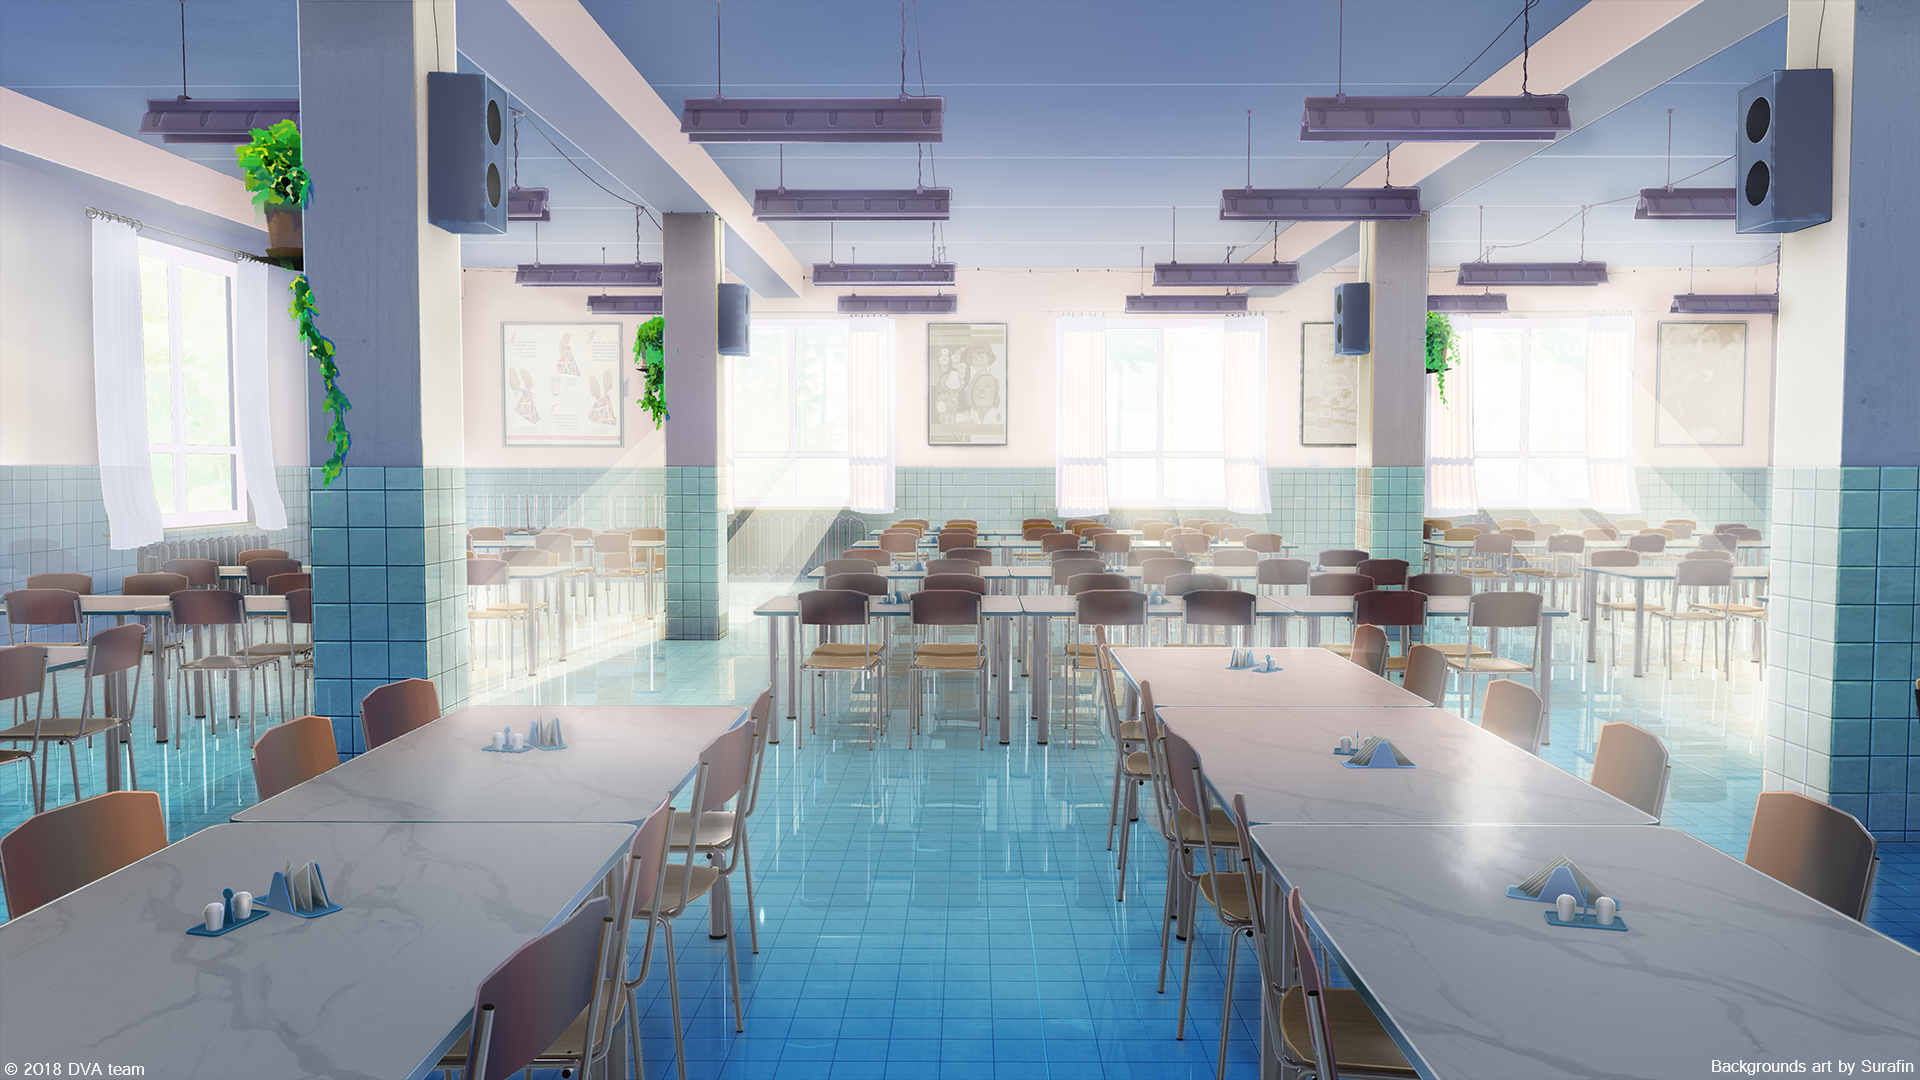 Với nền anime đầy màu sắc, cạo phay cafe đã trở thành nơi nghỉ ngơi lý tưởng cho các tín đồ anime. Hãy cùng chiêm ngưỡng hình ảnh vô cùng tươi vui và đáng yêu của quán cà phê này!